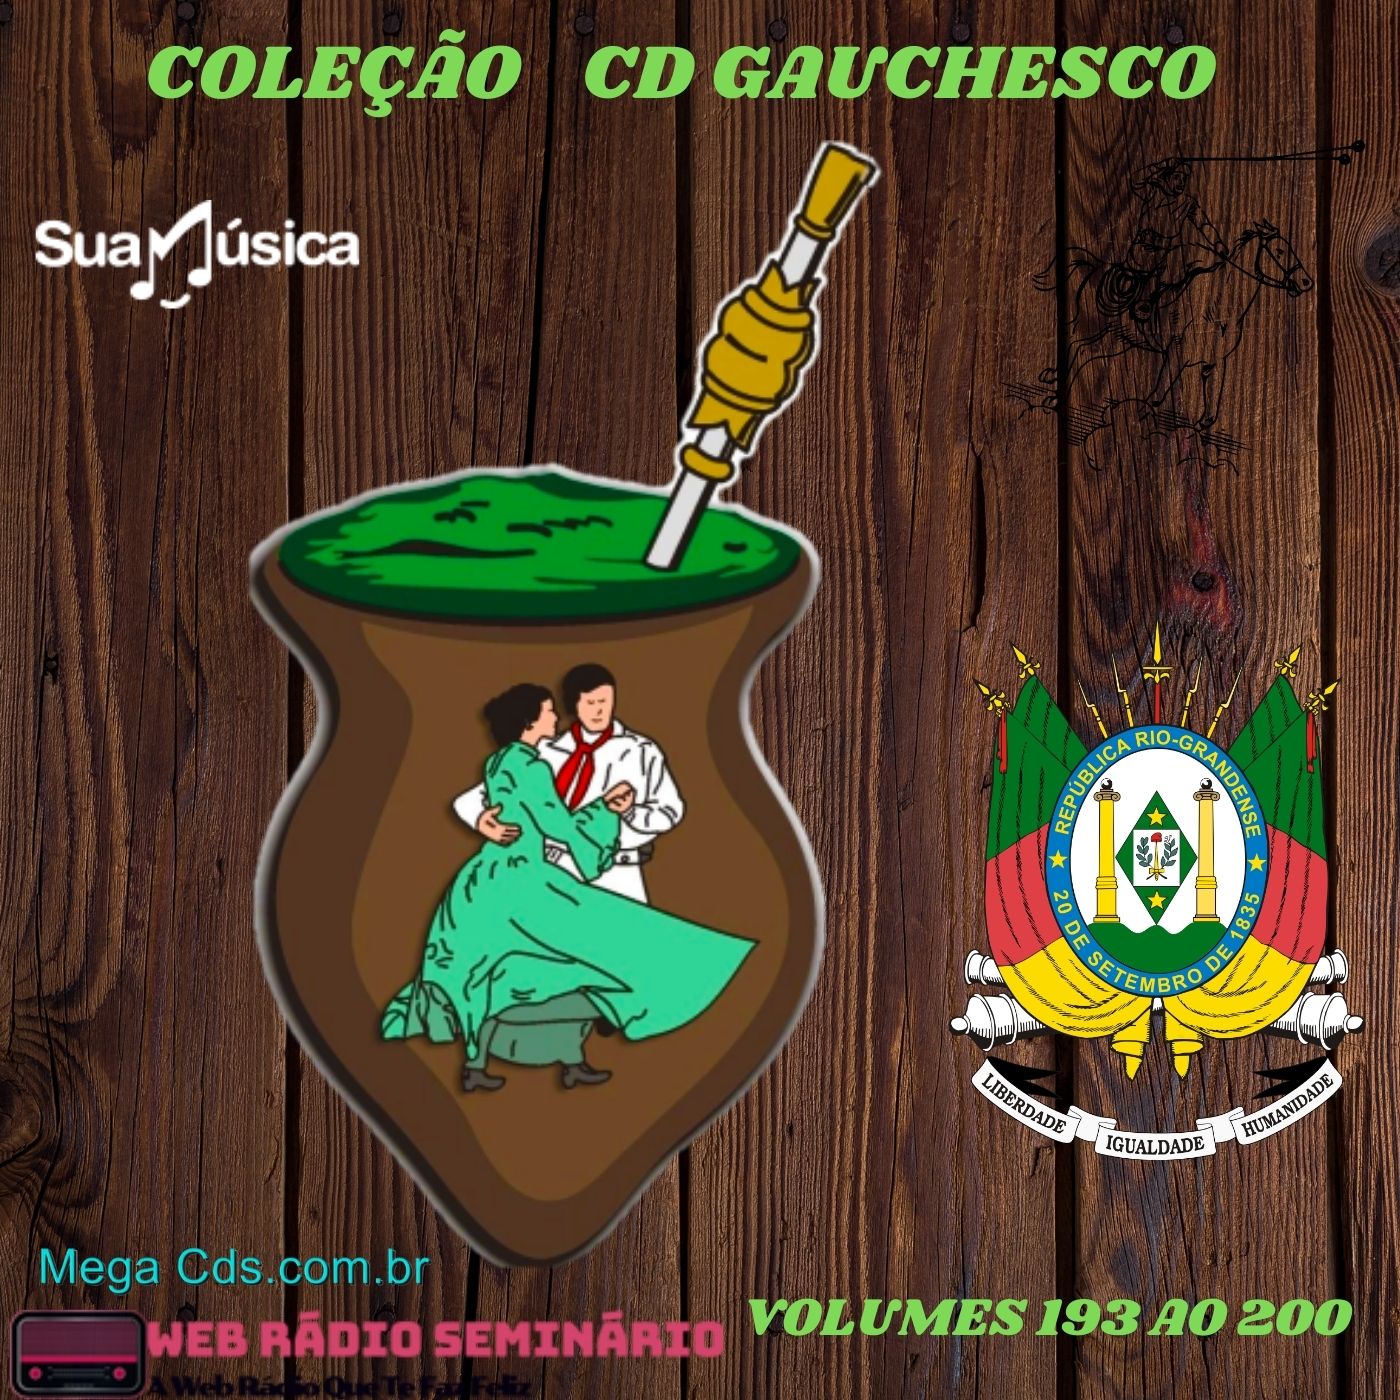 COLEÇÃO CD GAUCHESCO VOLUMES-193 AO 200